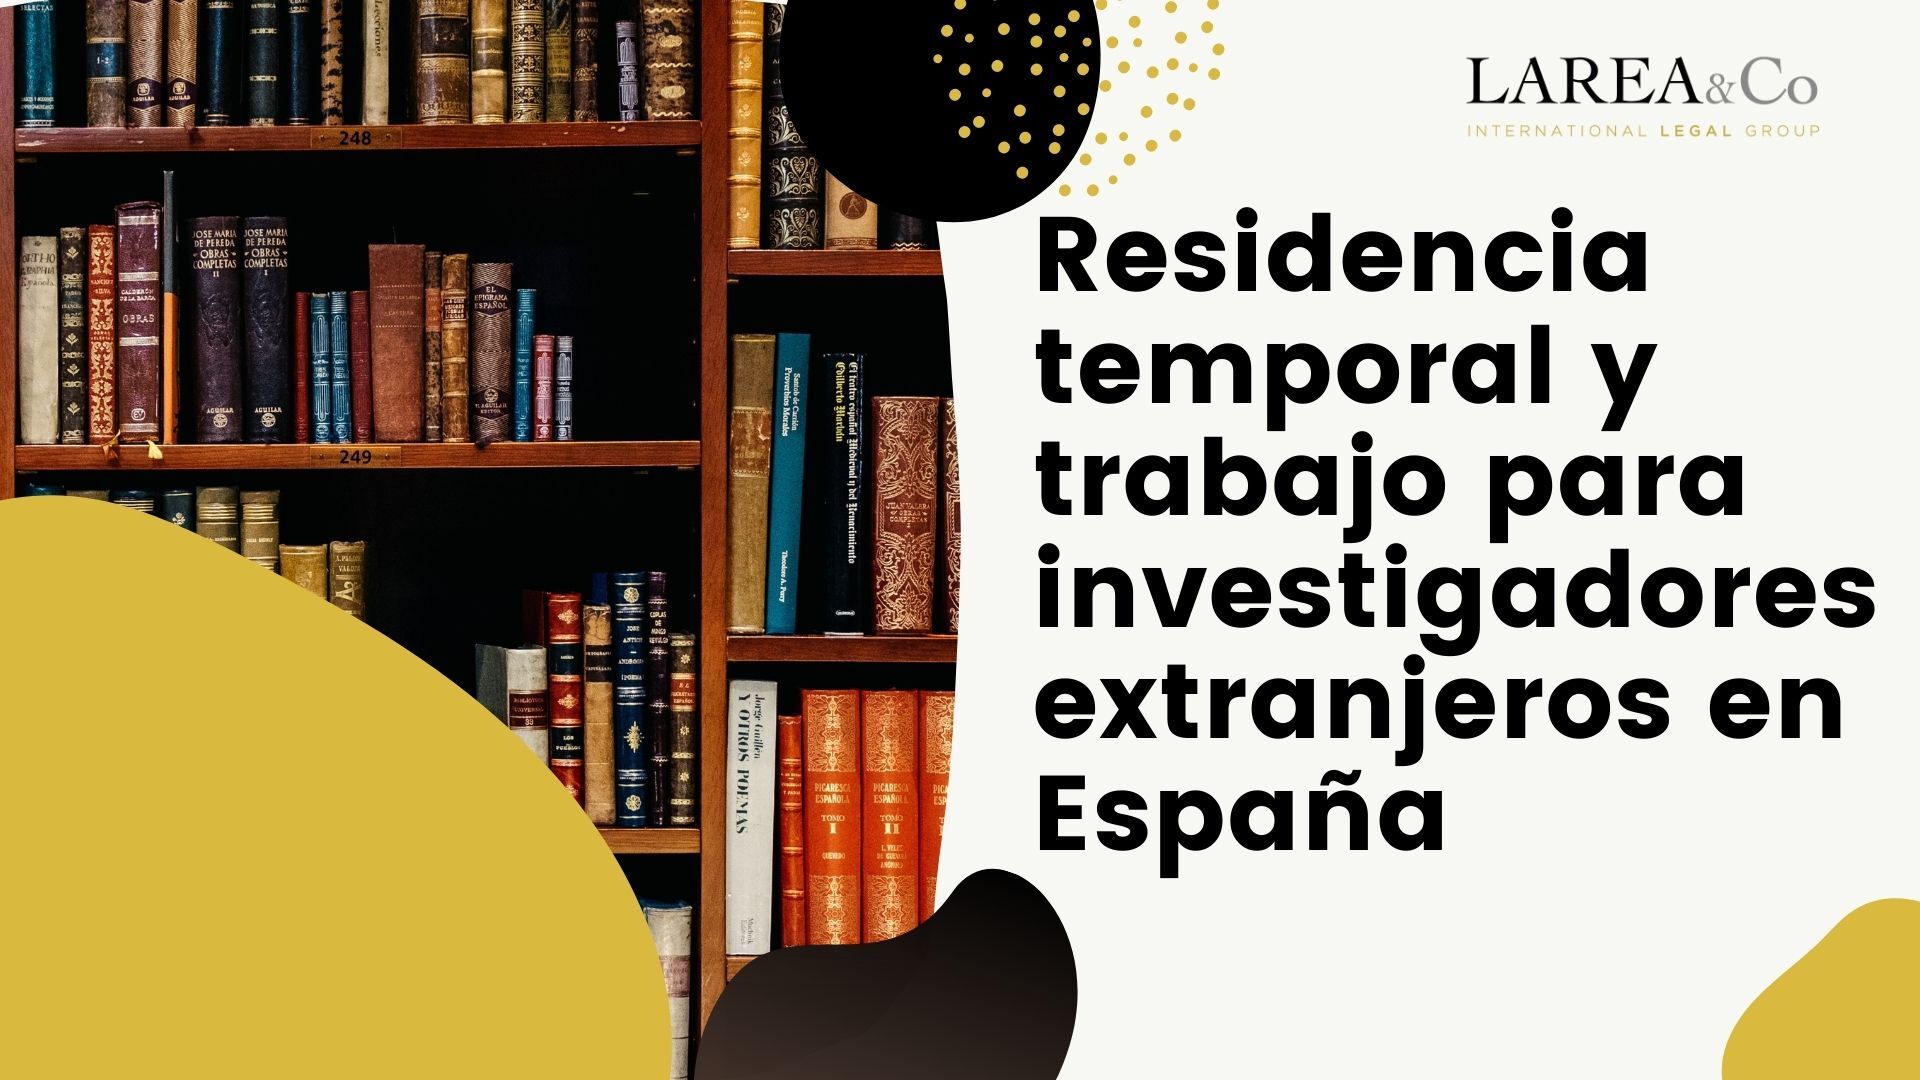 Residencia temporal y trabajo para investigadores extranjeros en España